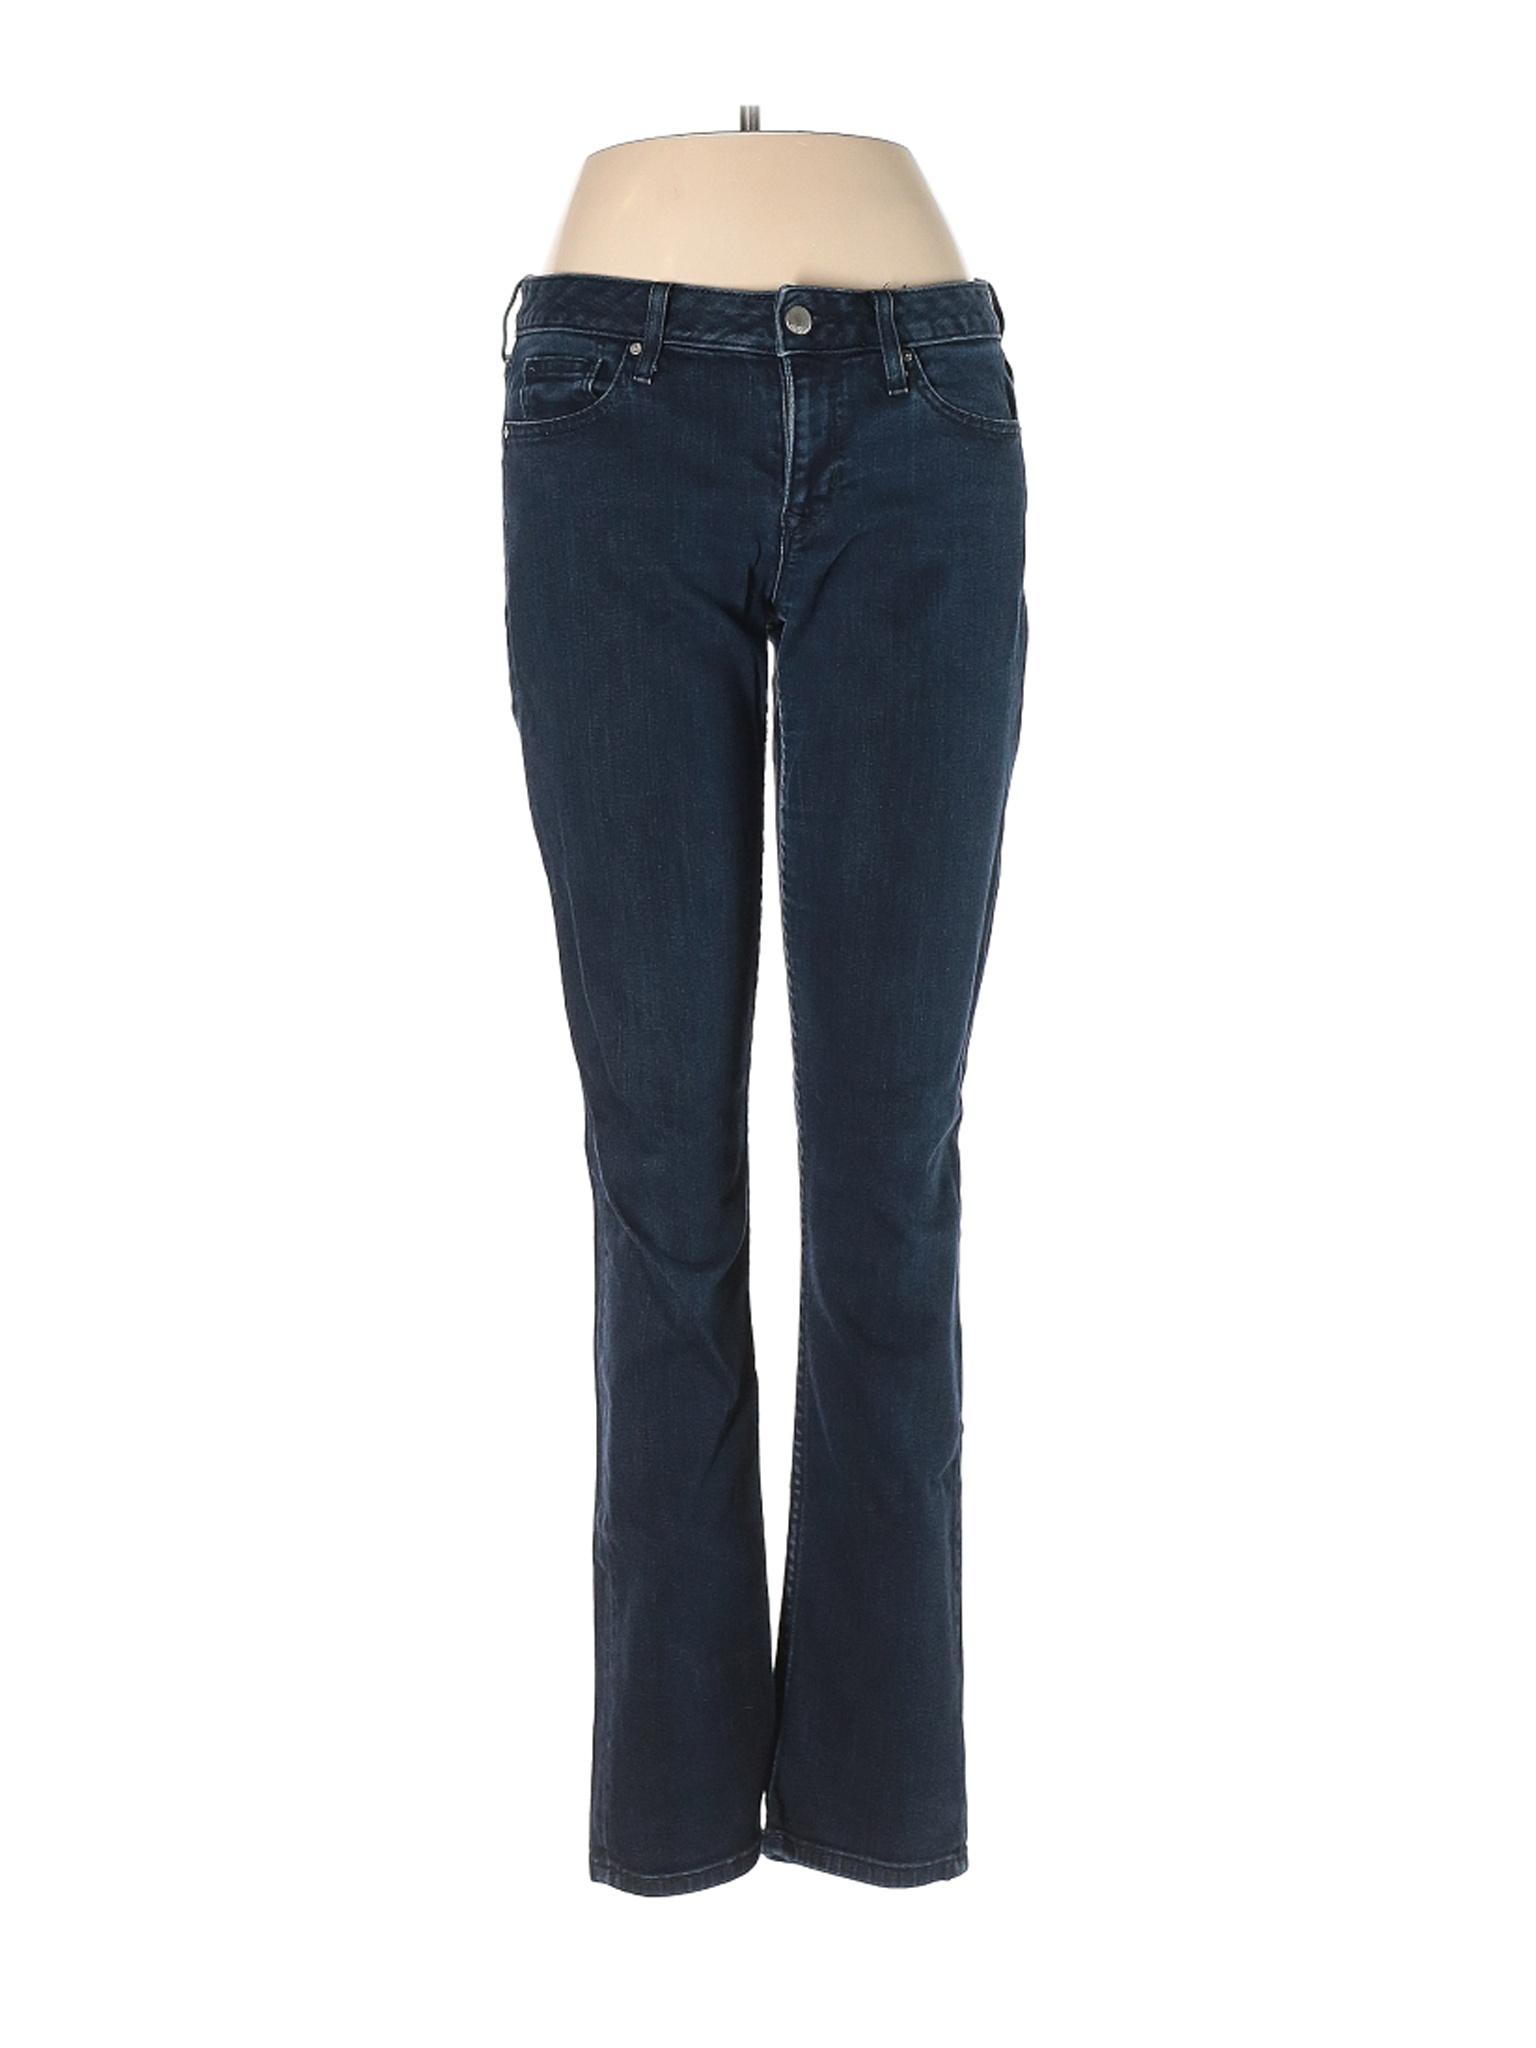 Gap Women Blue Jeans 28W | eBay